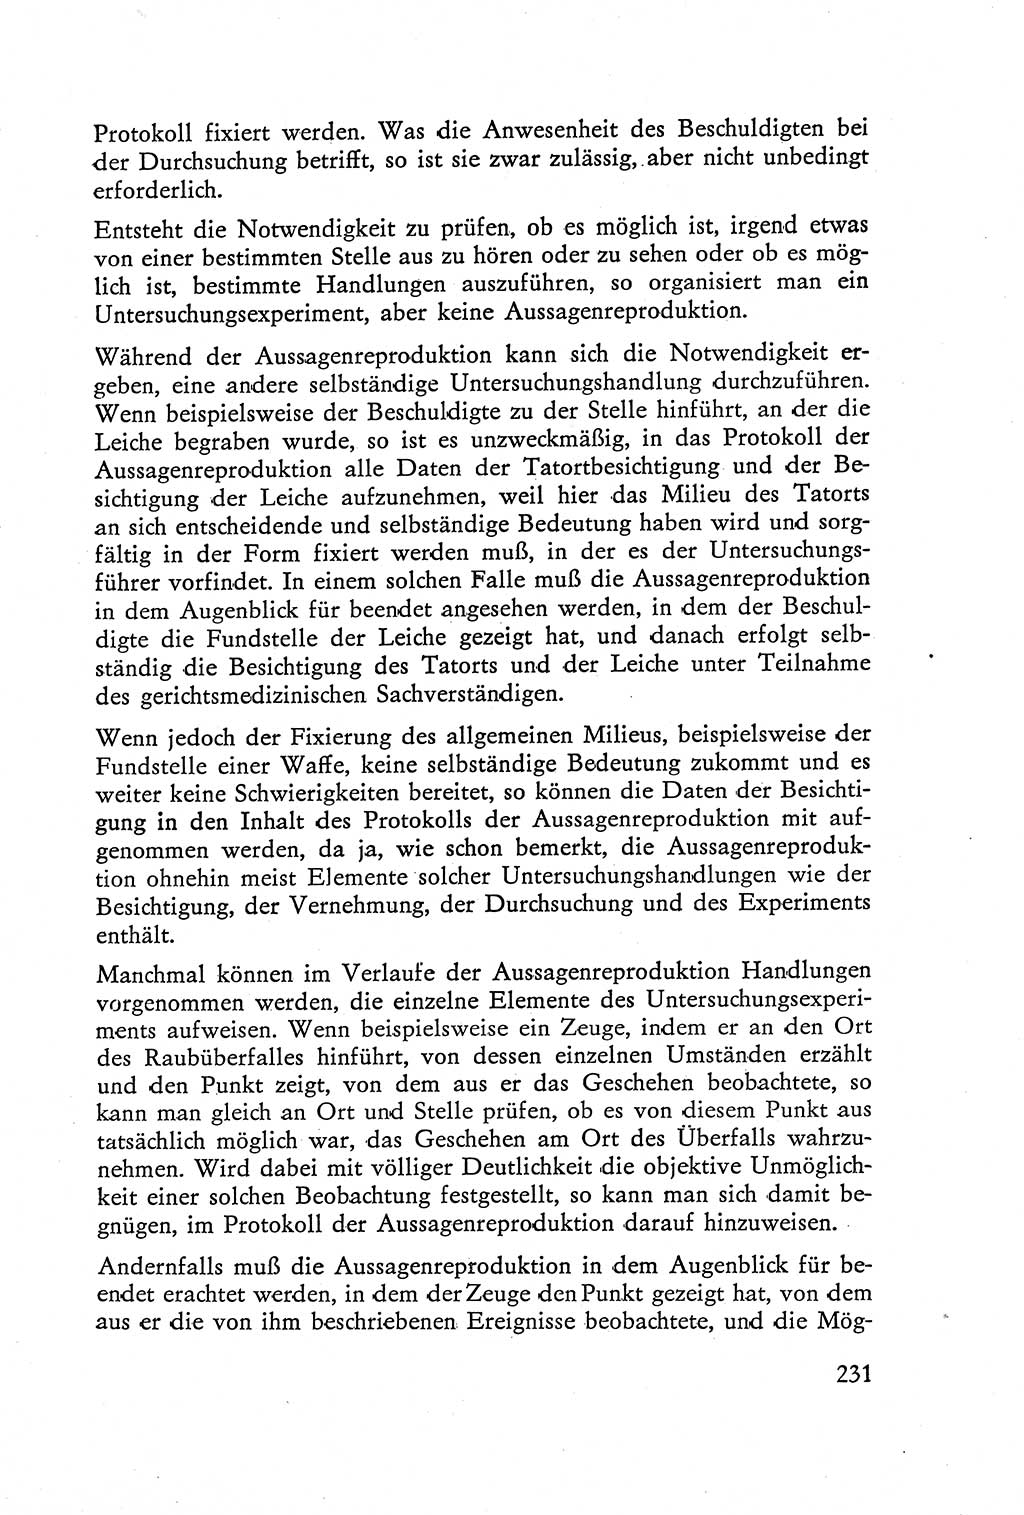 Die Vernehmung [Deutsche Demokratische Republik (DDR)] 1960, Seite 231 (Vern. DDR 1960, S. 231)